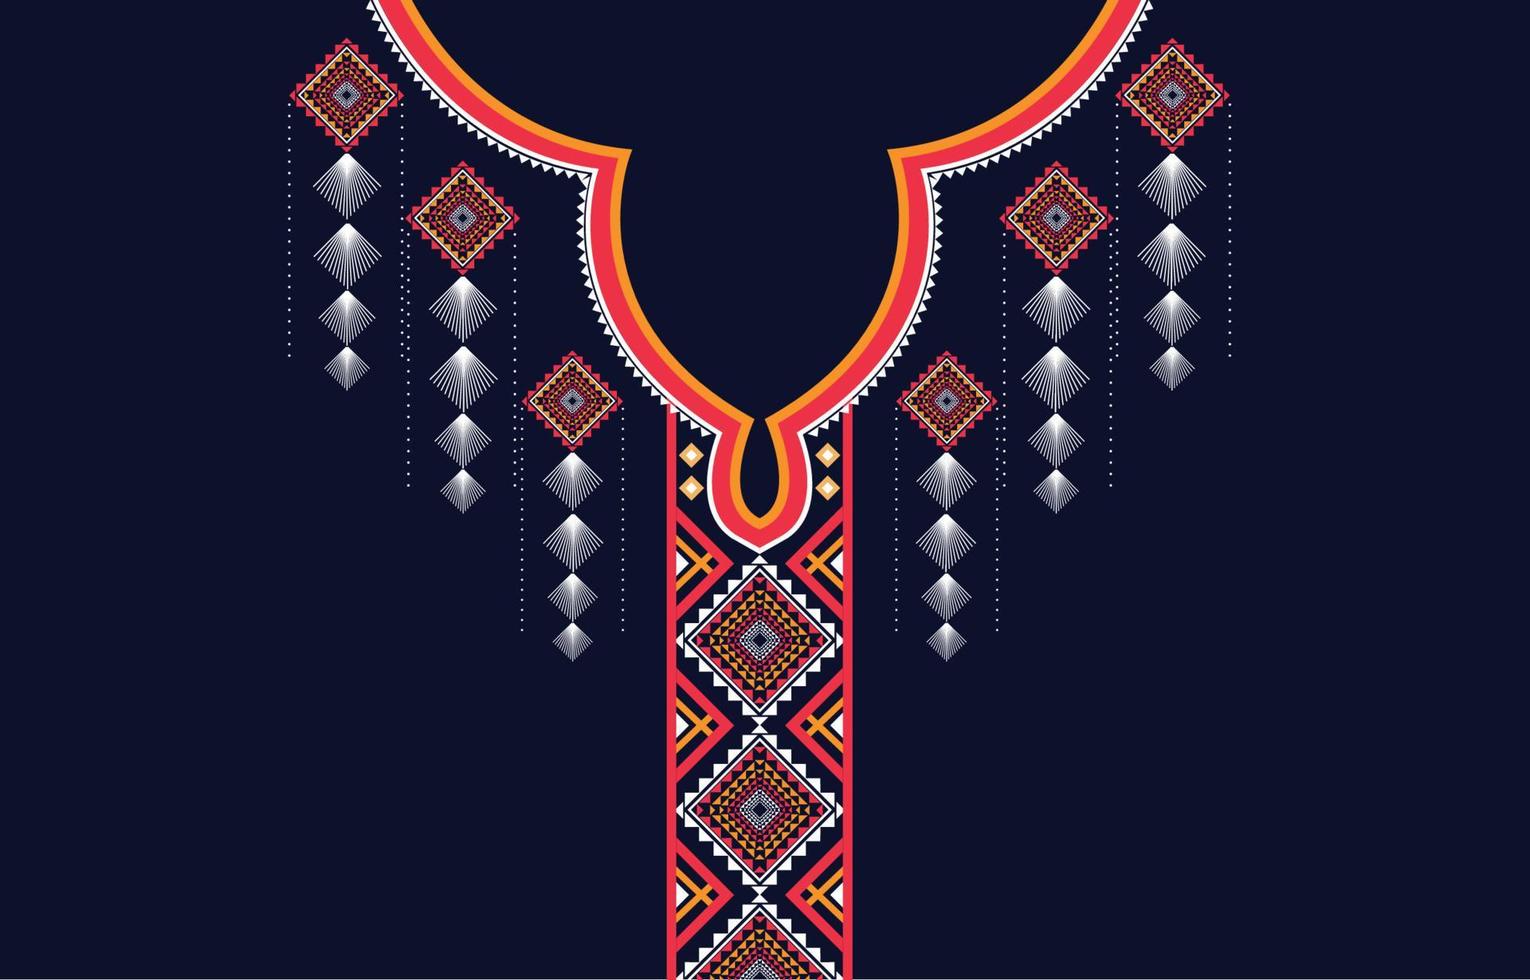 bordado de cuello étnico formas geométricas patrones étnicos diseños de bordado de cuello para fondos o papel tapiz y ropa para vector de moda